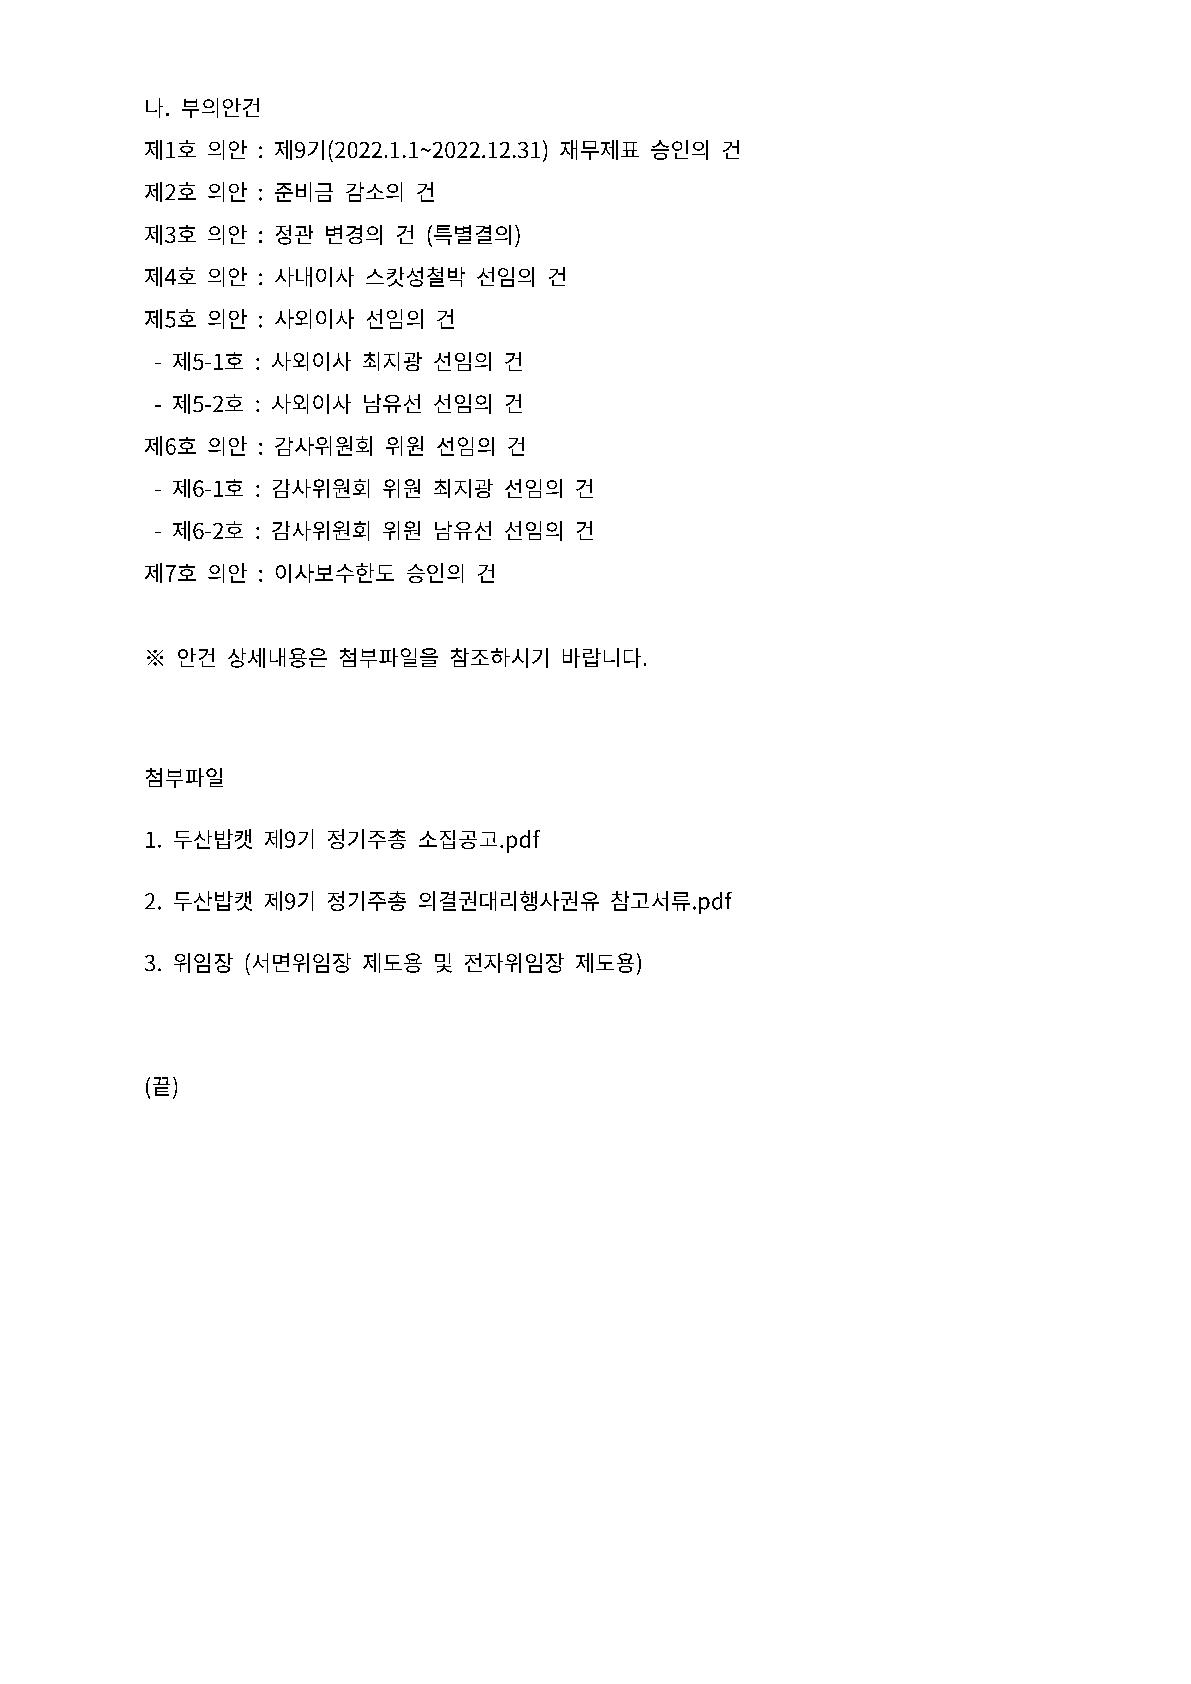 두산밥캣 제9기 정기주주총회 소집공고_홈페이지_2.jpg